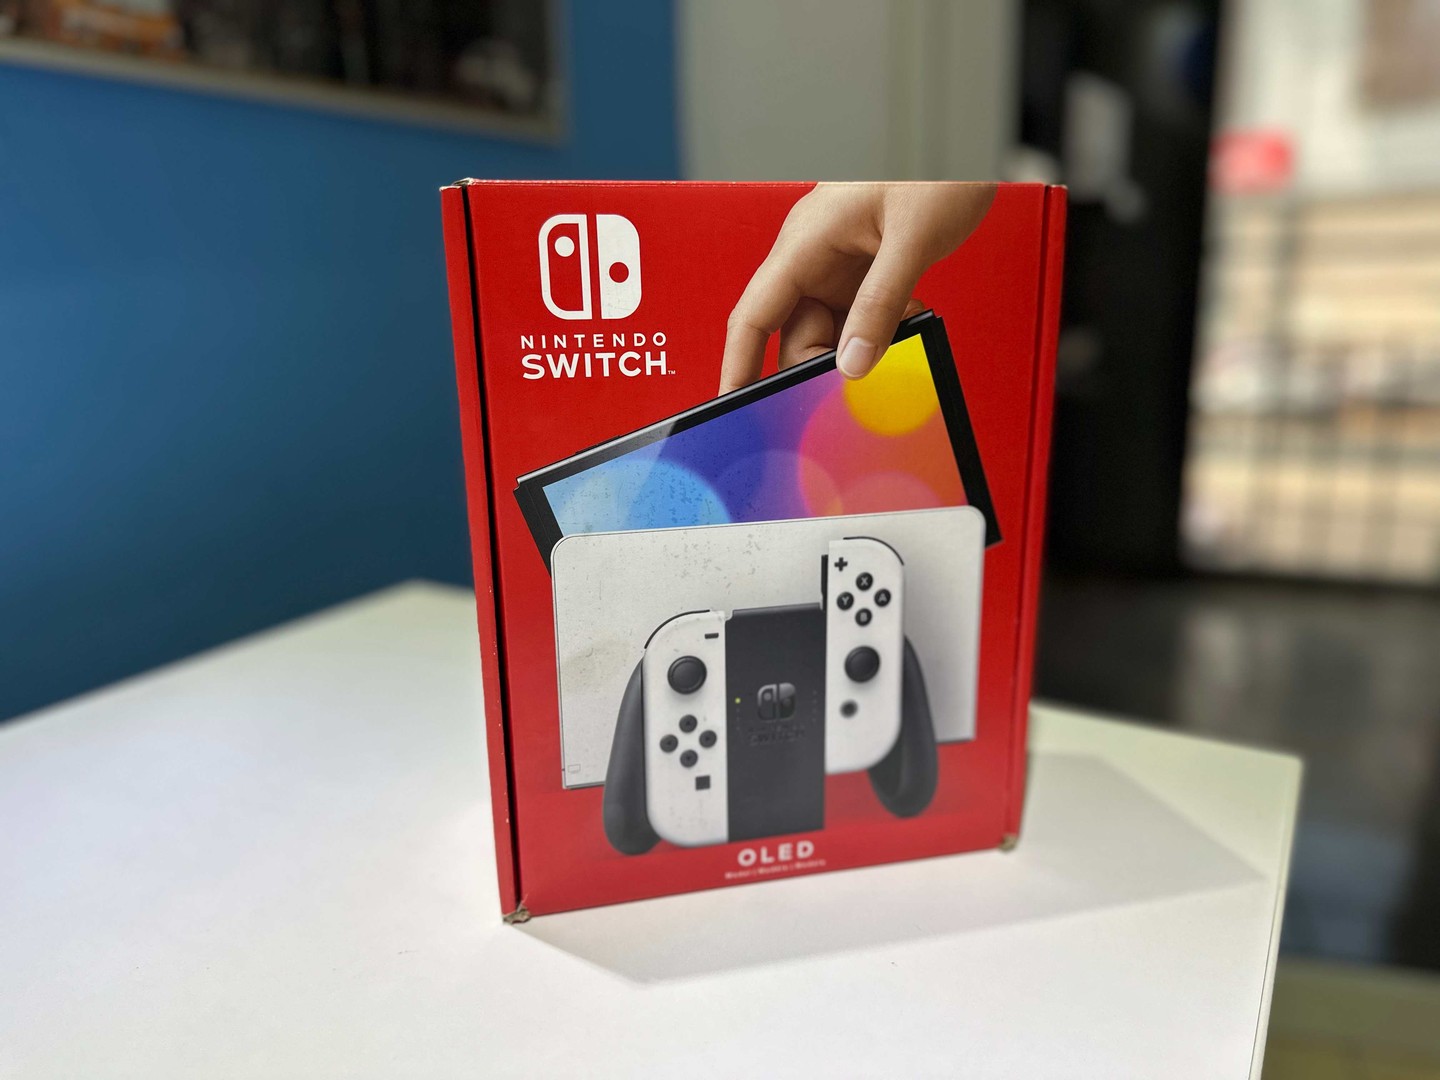 consolas y videojuegos - Vendo Nintendo Switch OLED Blanco Nuevos Sellados  , Originales RD$ 20,300 NEG 0